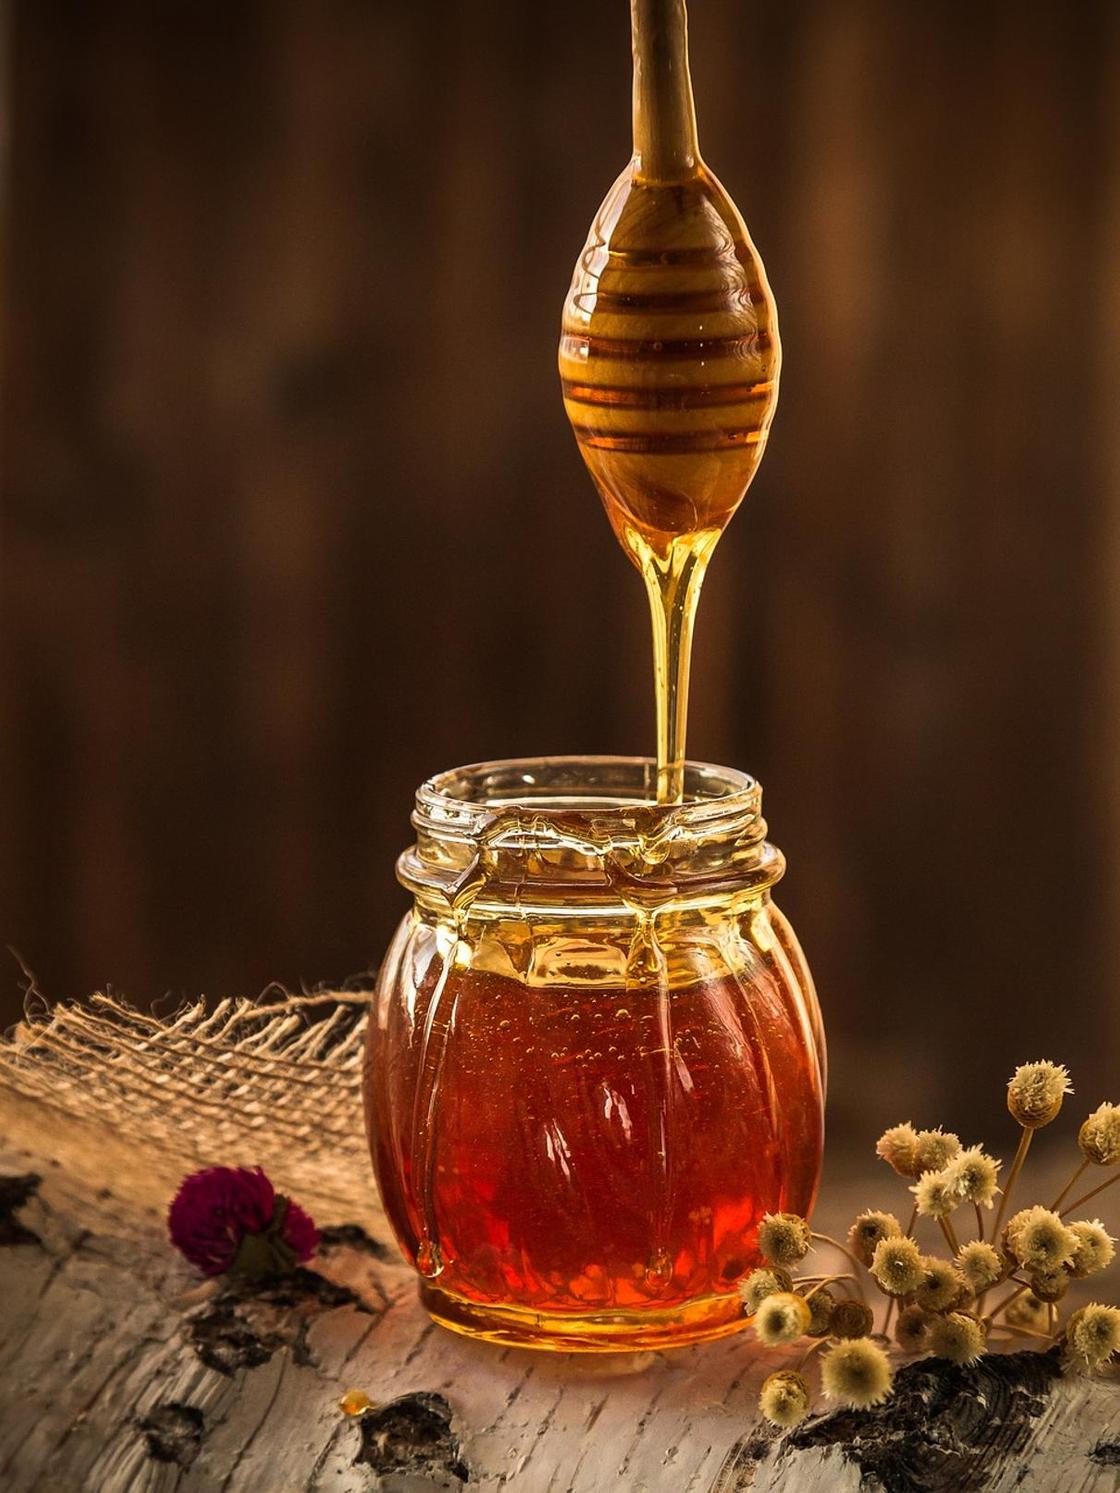 Можно ли хранить мед в пластиковой посуде при комнатной температуре